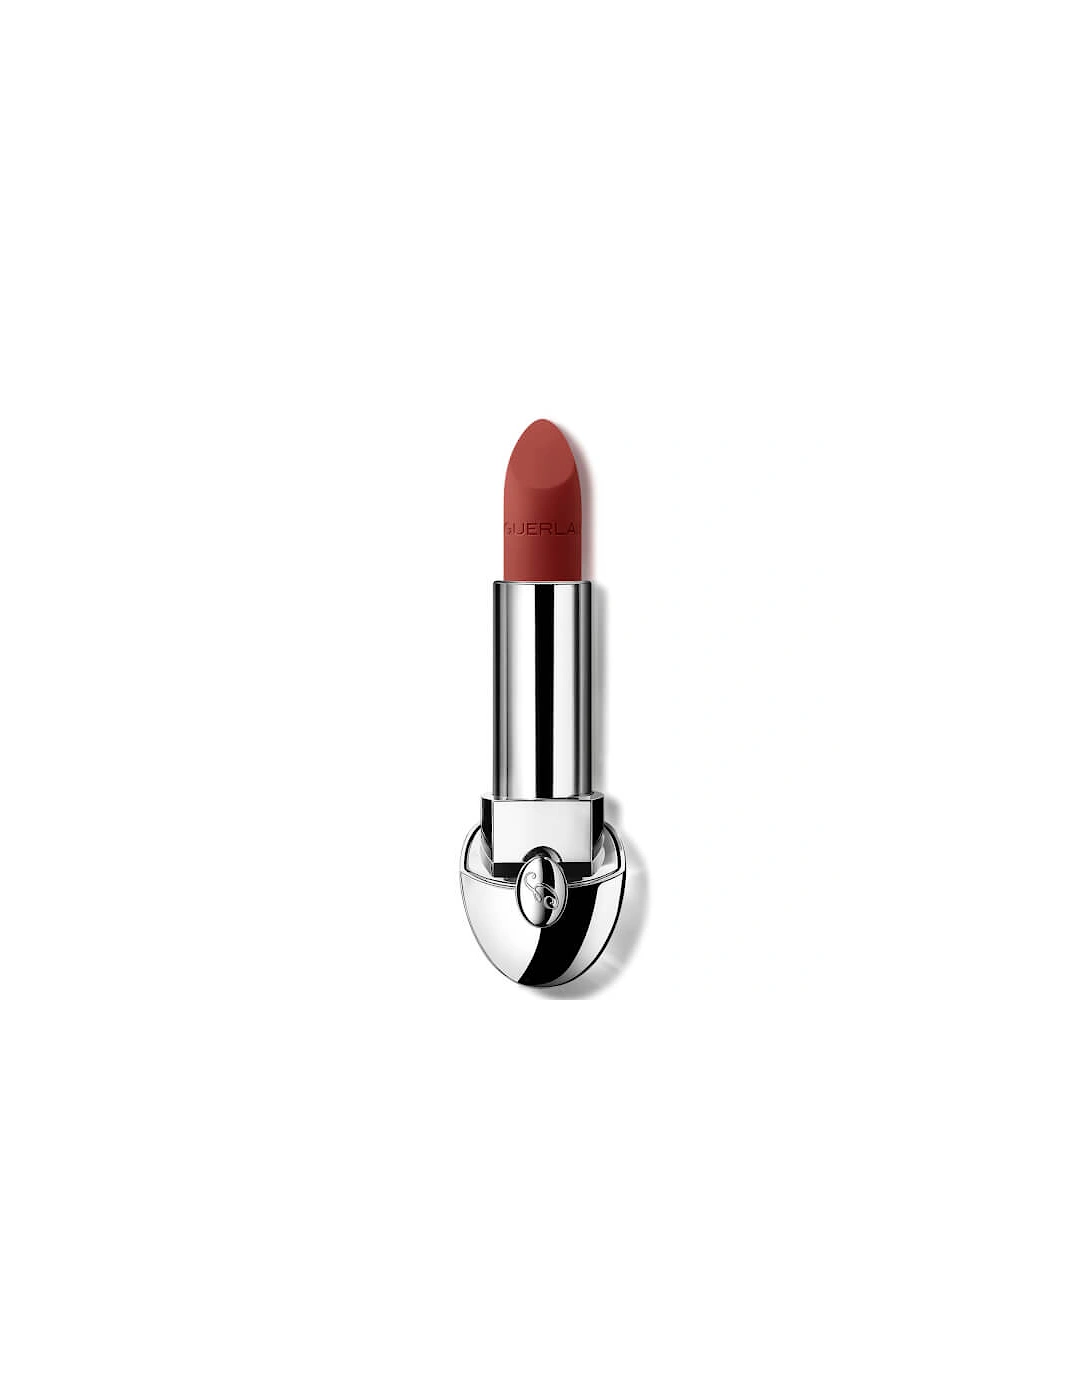 Rouge G Luxurious Velvet 16 Hour Wear High-Pigmentation Velvet Matte Lipstick - 555 Brick Red, 2 of 1